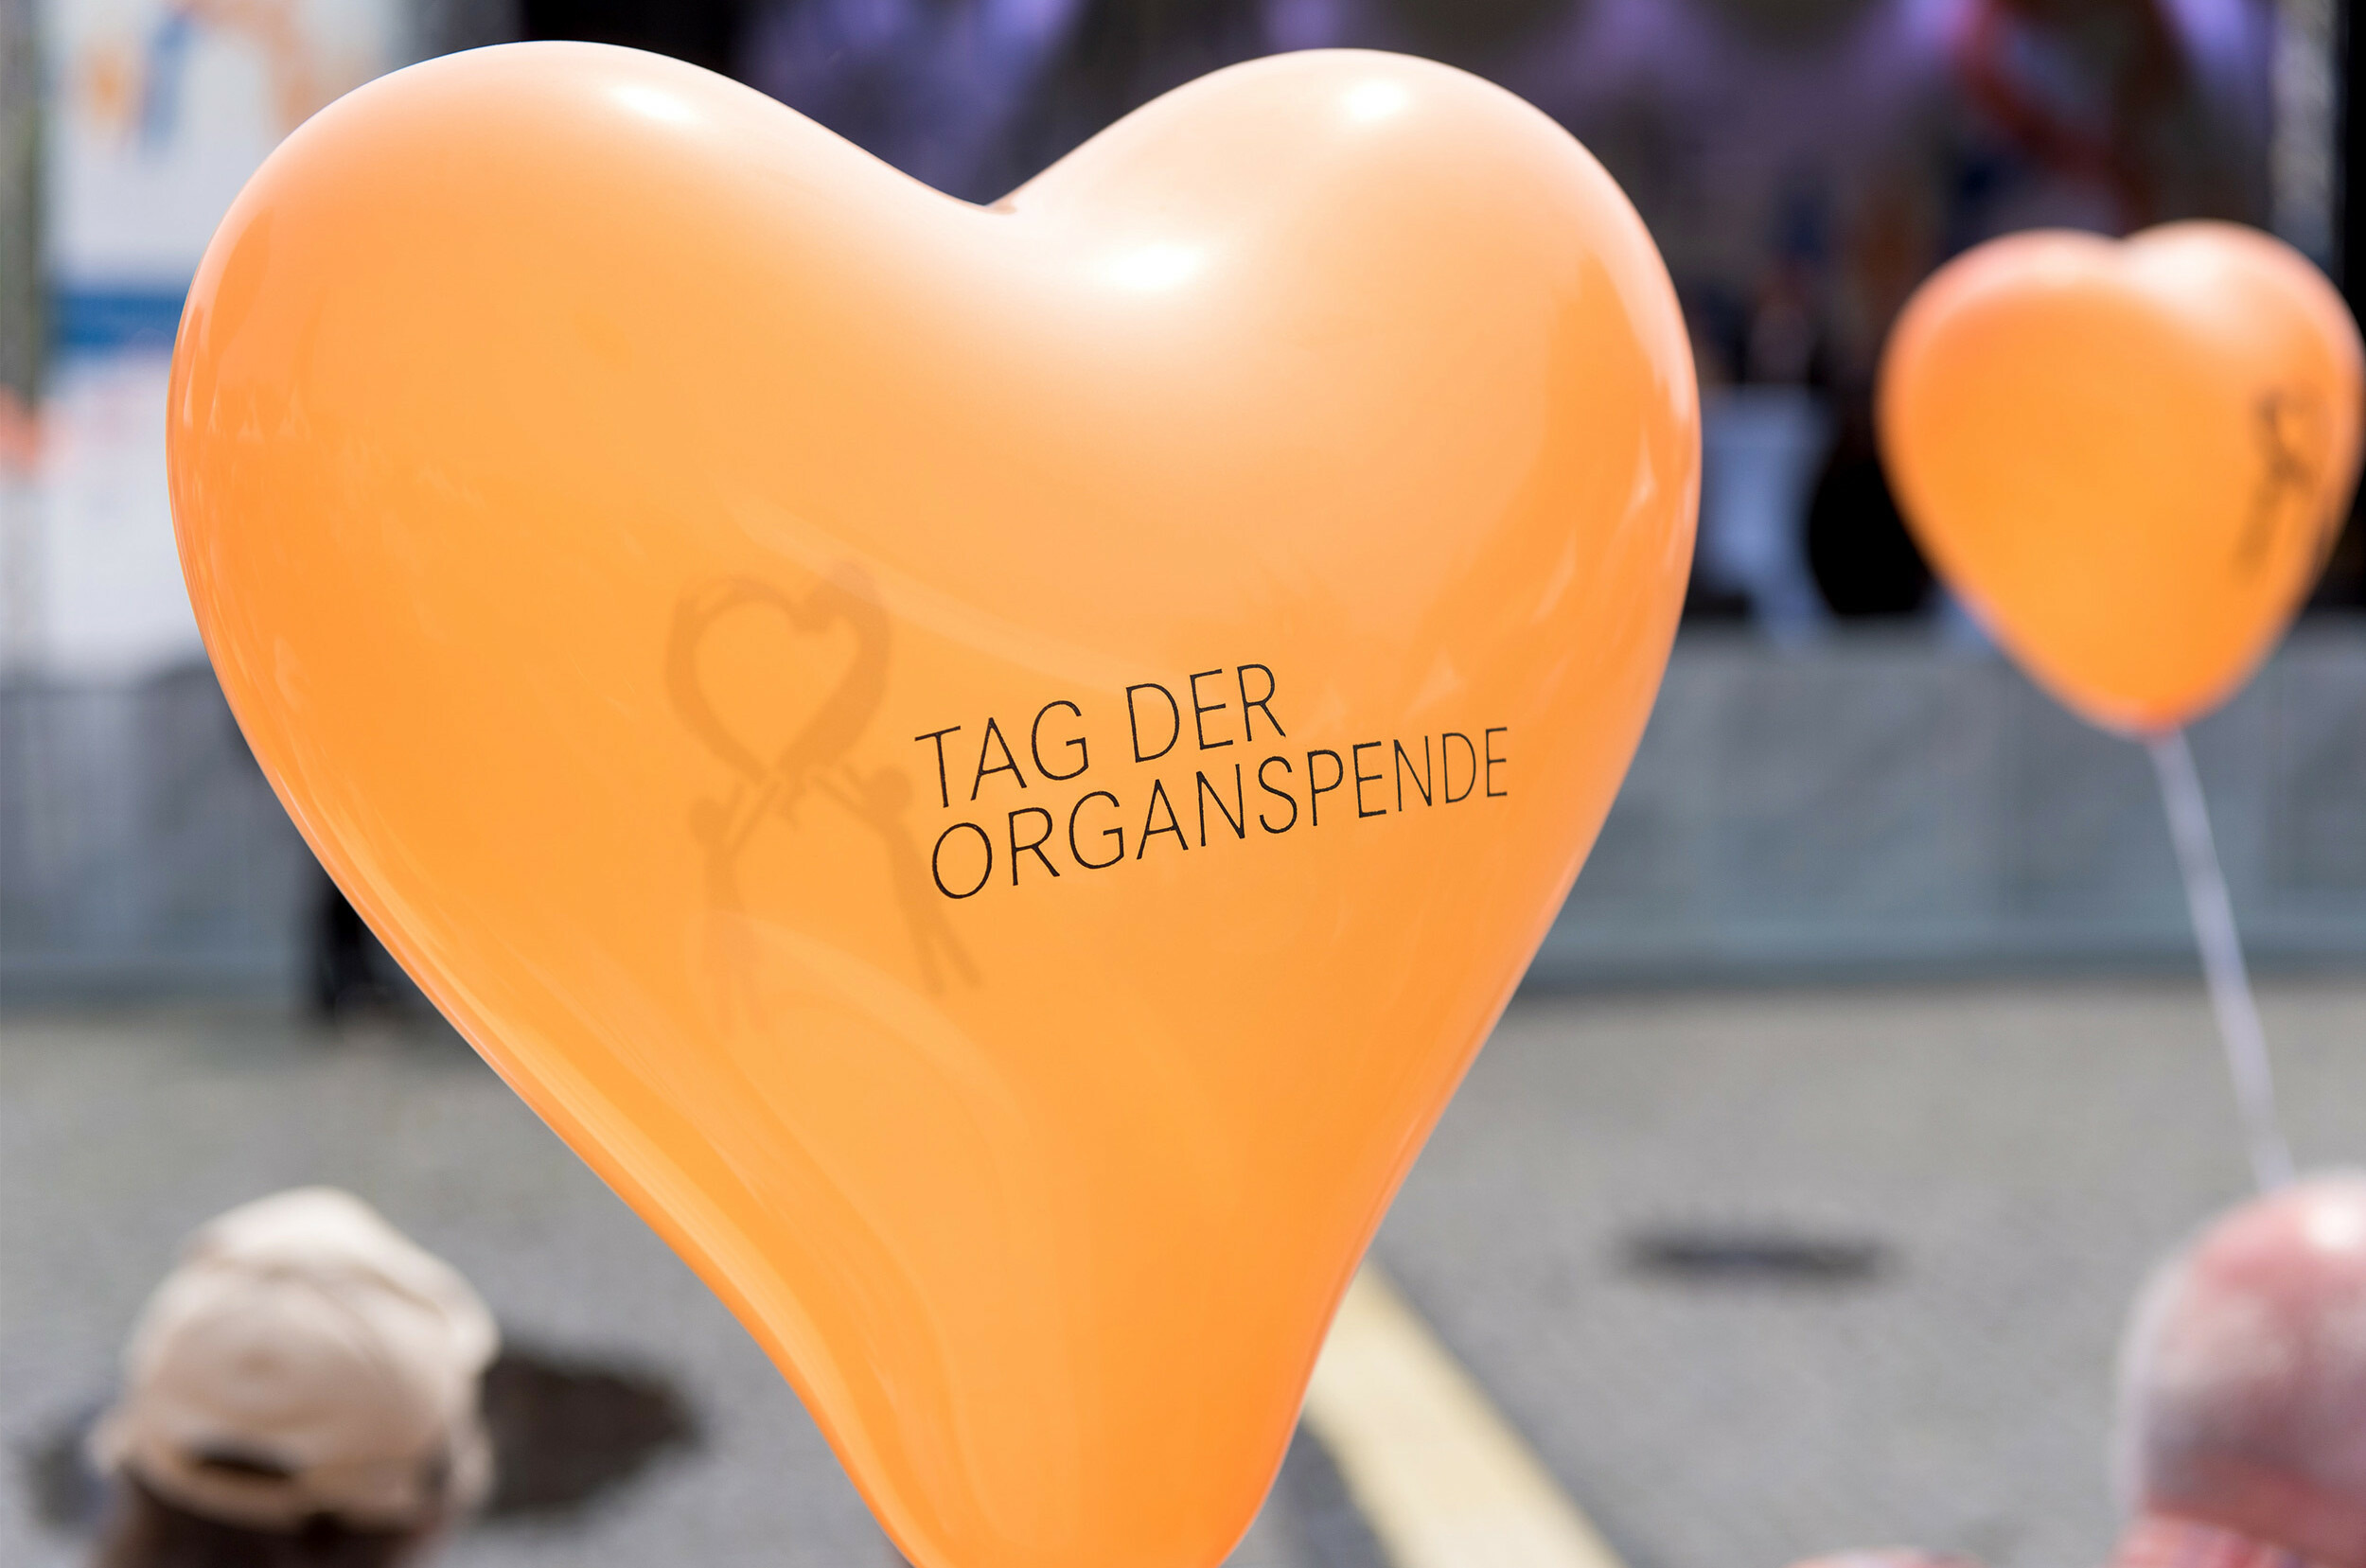 Zu sehen ist ein orangefarbener Herzballon auf dem „Tag der Organspende" steht.